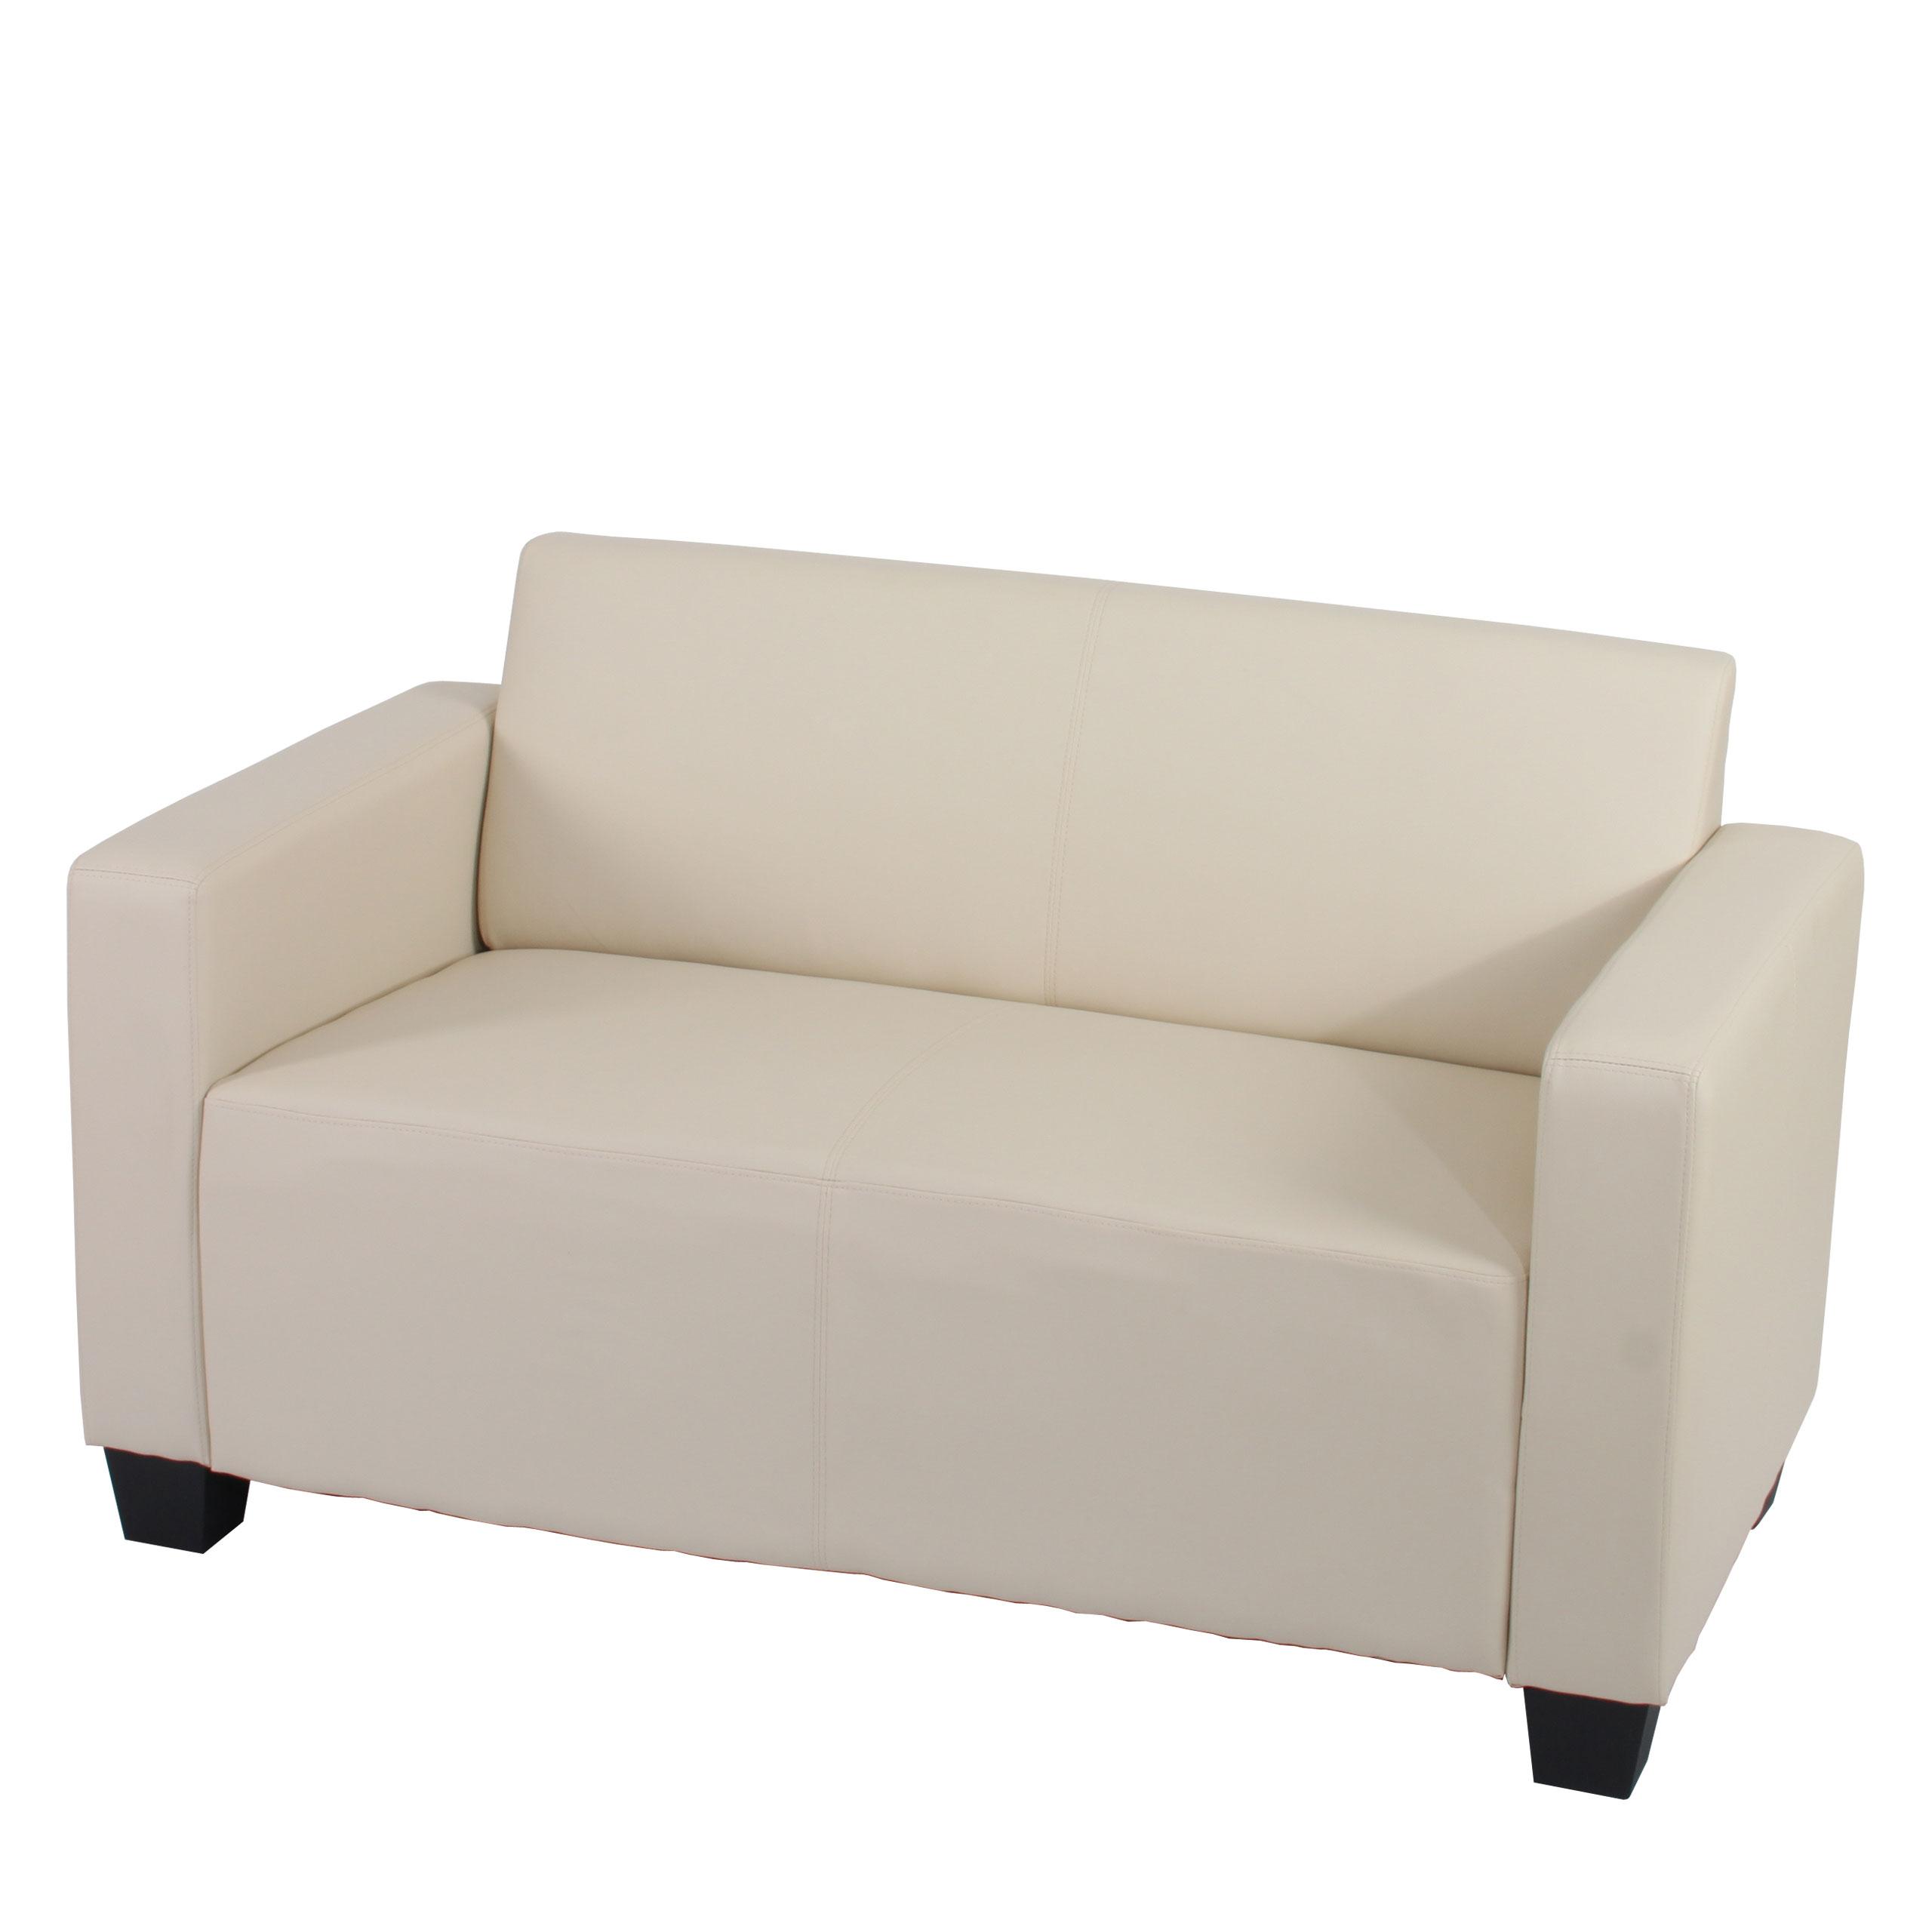 Sofa RODDY, Zweisitzer. Elegantes Design, sehr bequem, Leder, Farbe Cremweiß